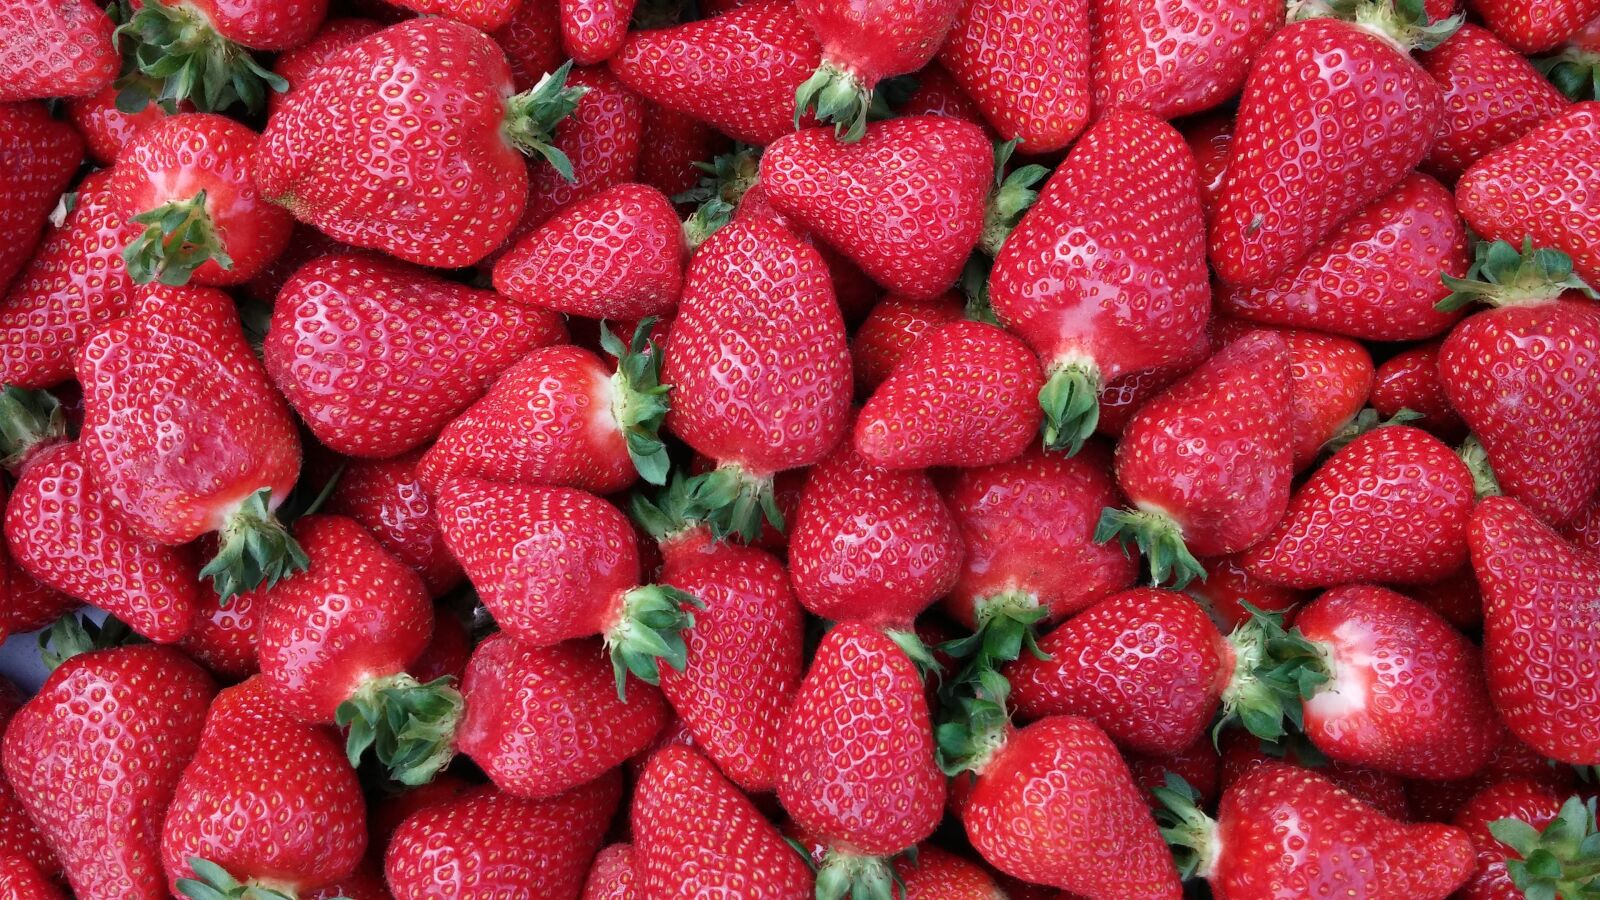 LG G2 sample photo. Strawberry, fruit, fruits photography